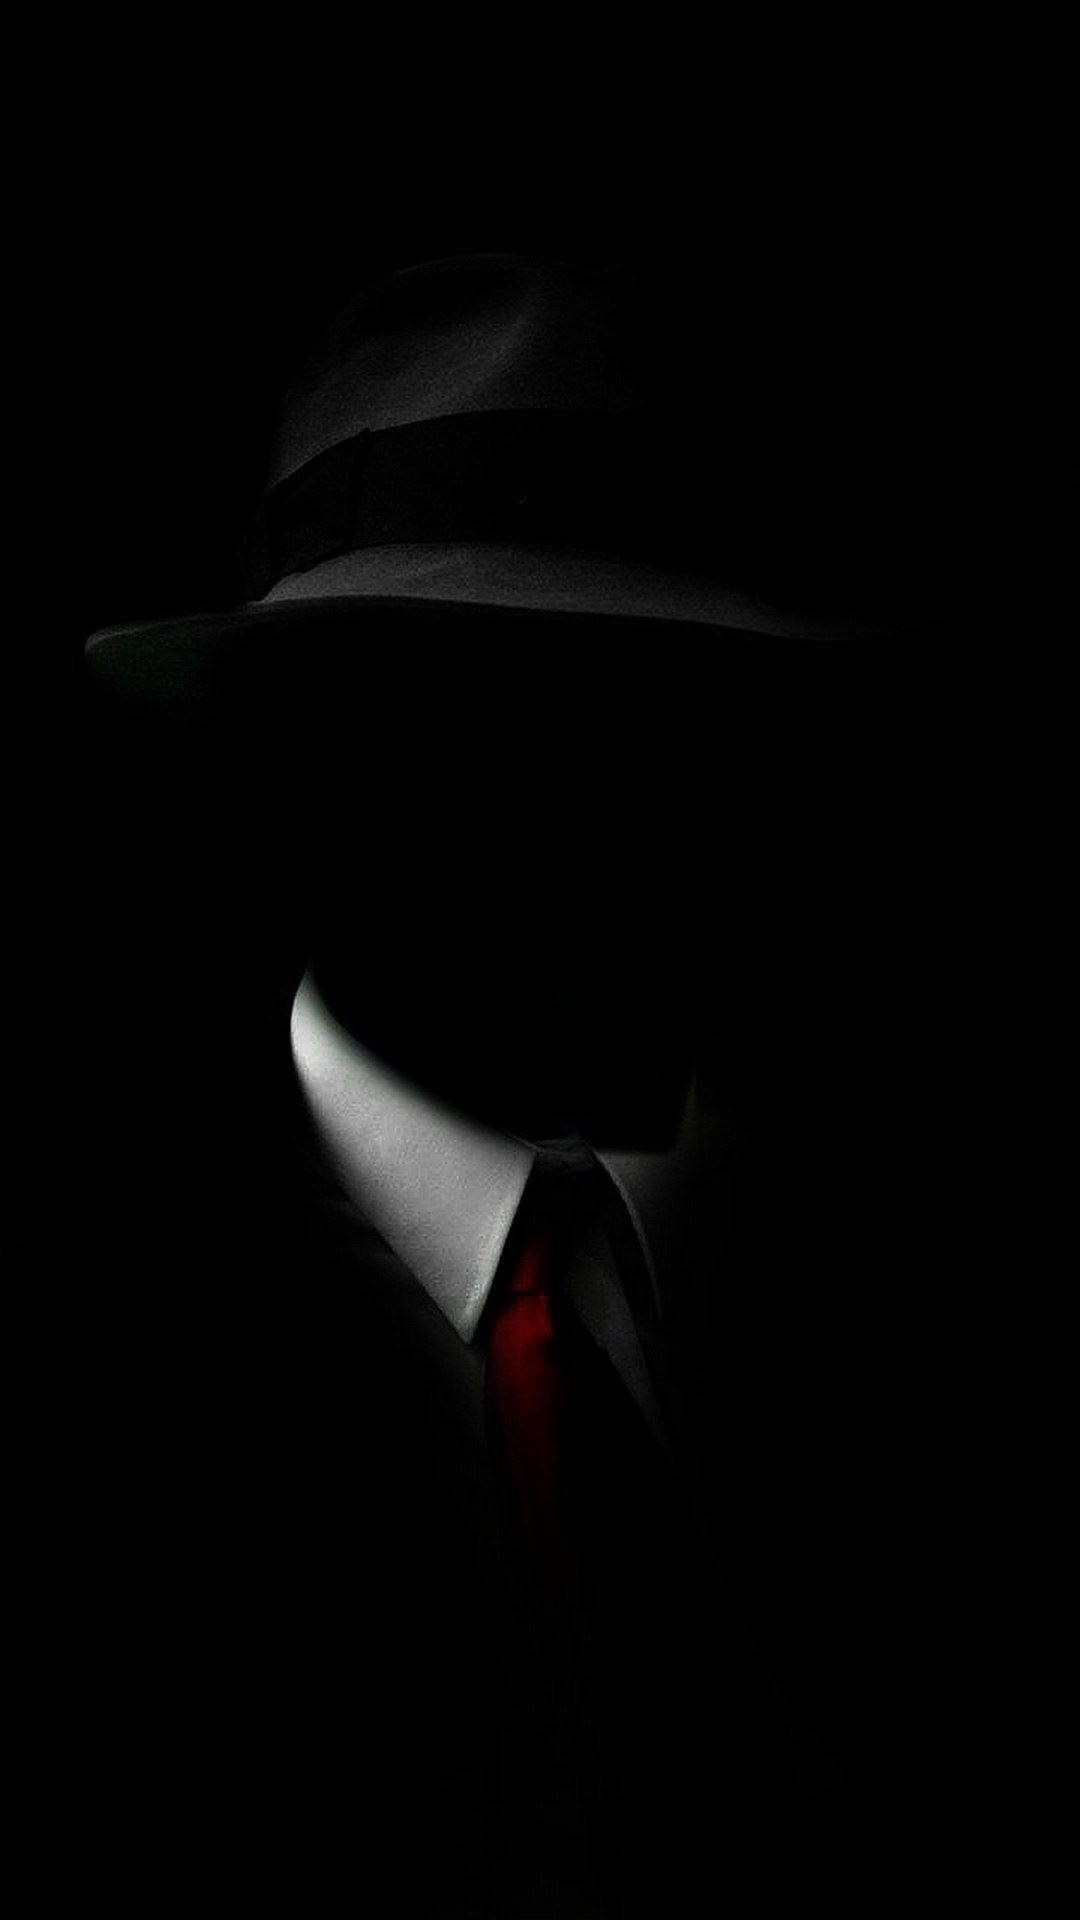 1080x1920 Black Suit Hat Red Tie iPhone 6 Wallpaper Download | iPhone Wallpapers .